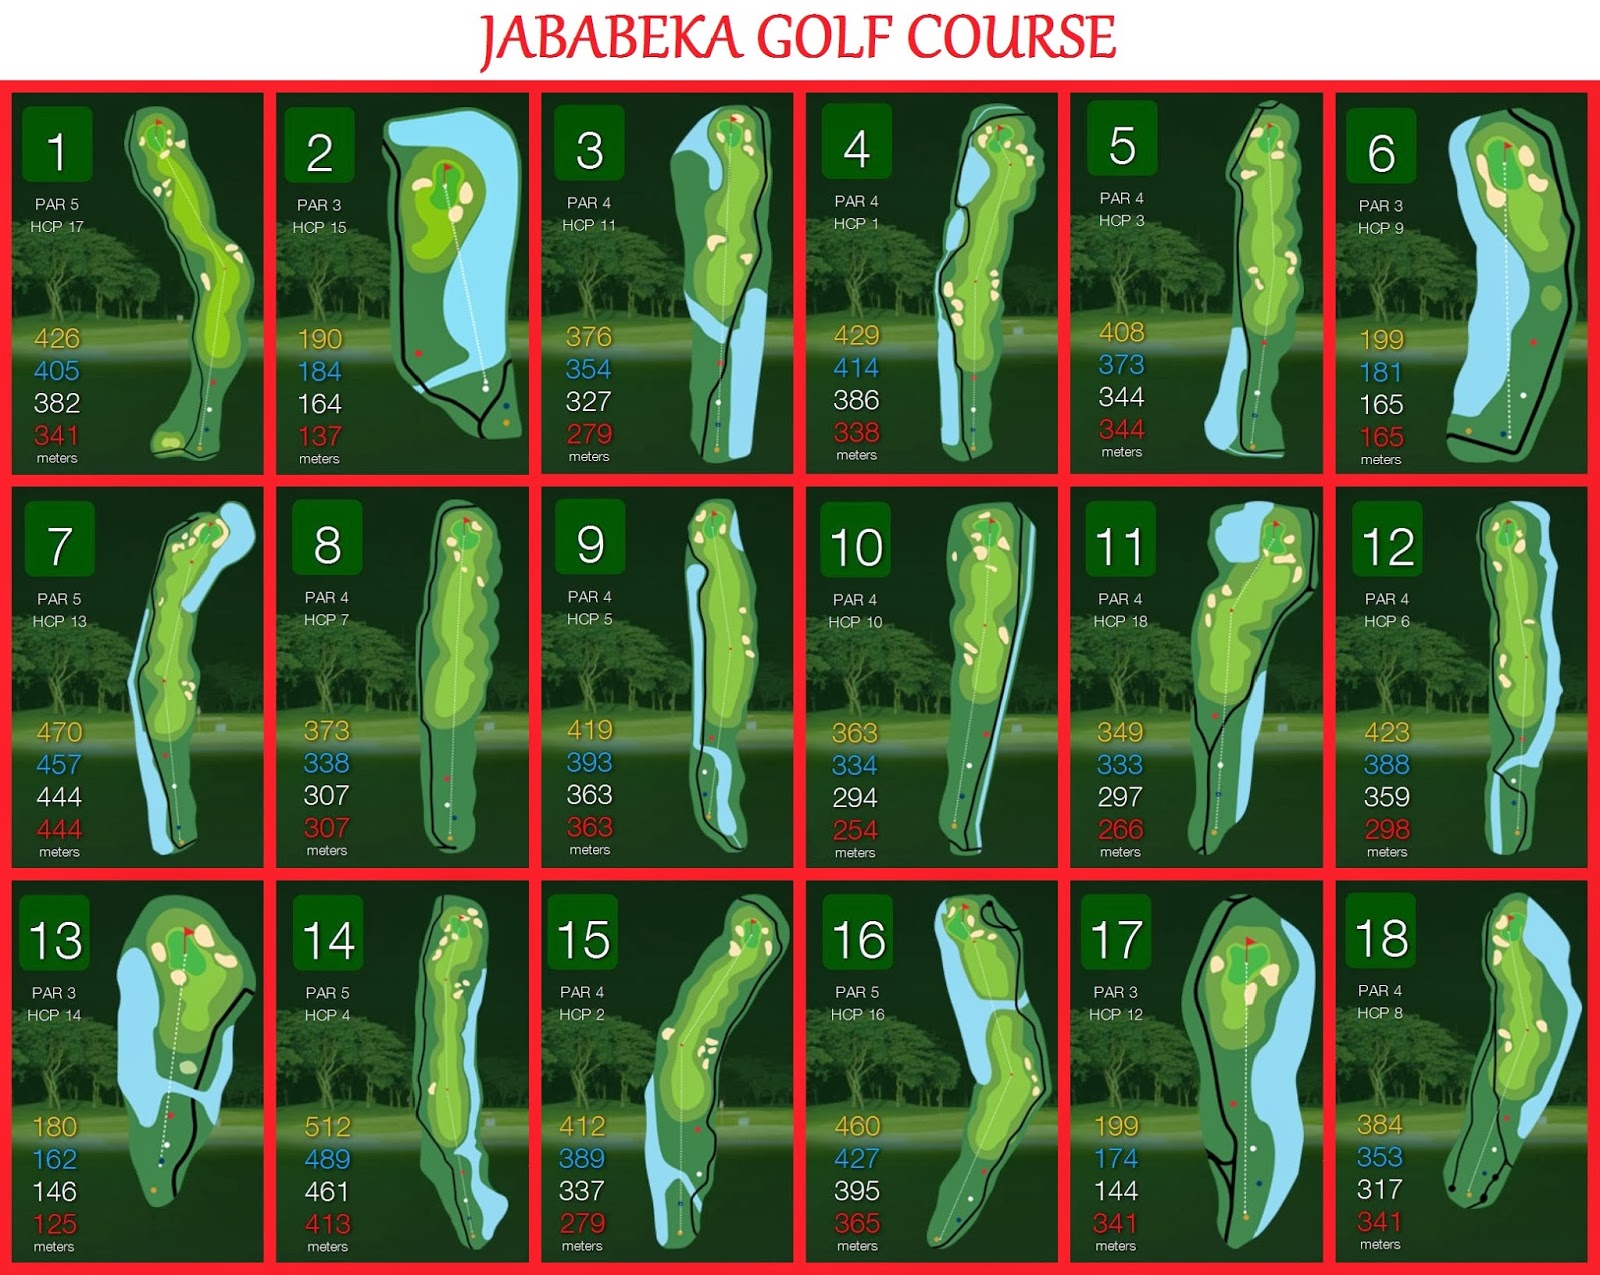 Jababeka Golf Course.JPG